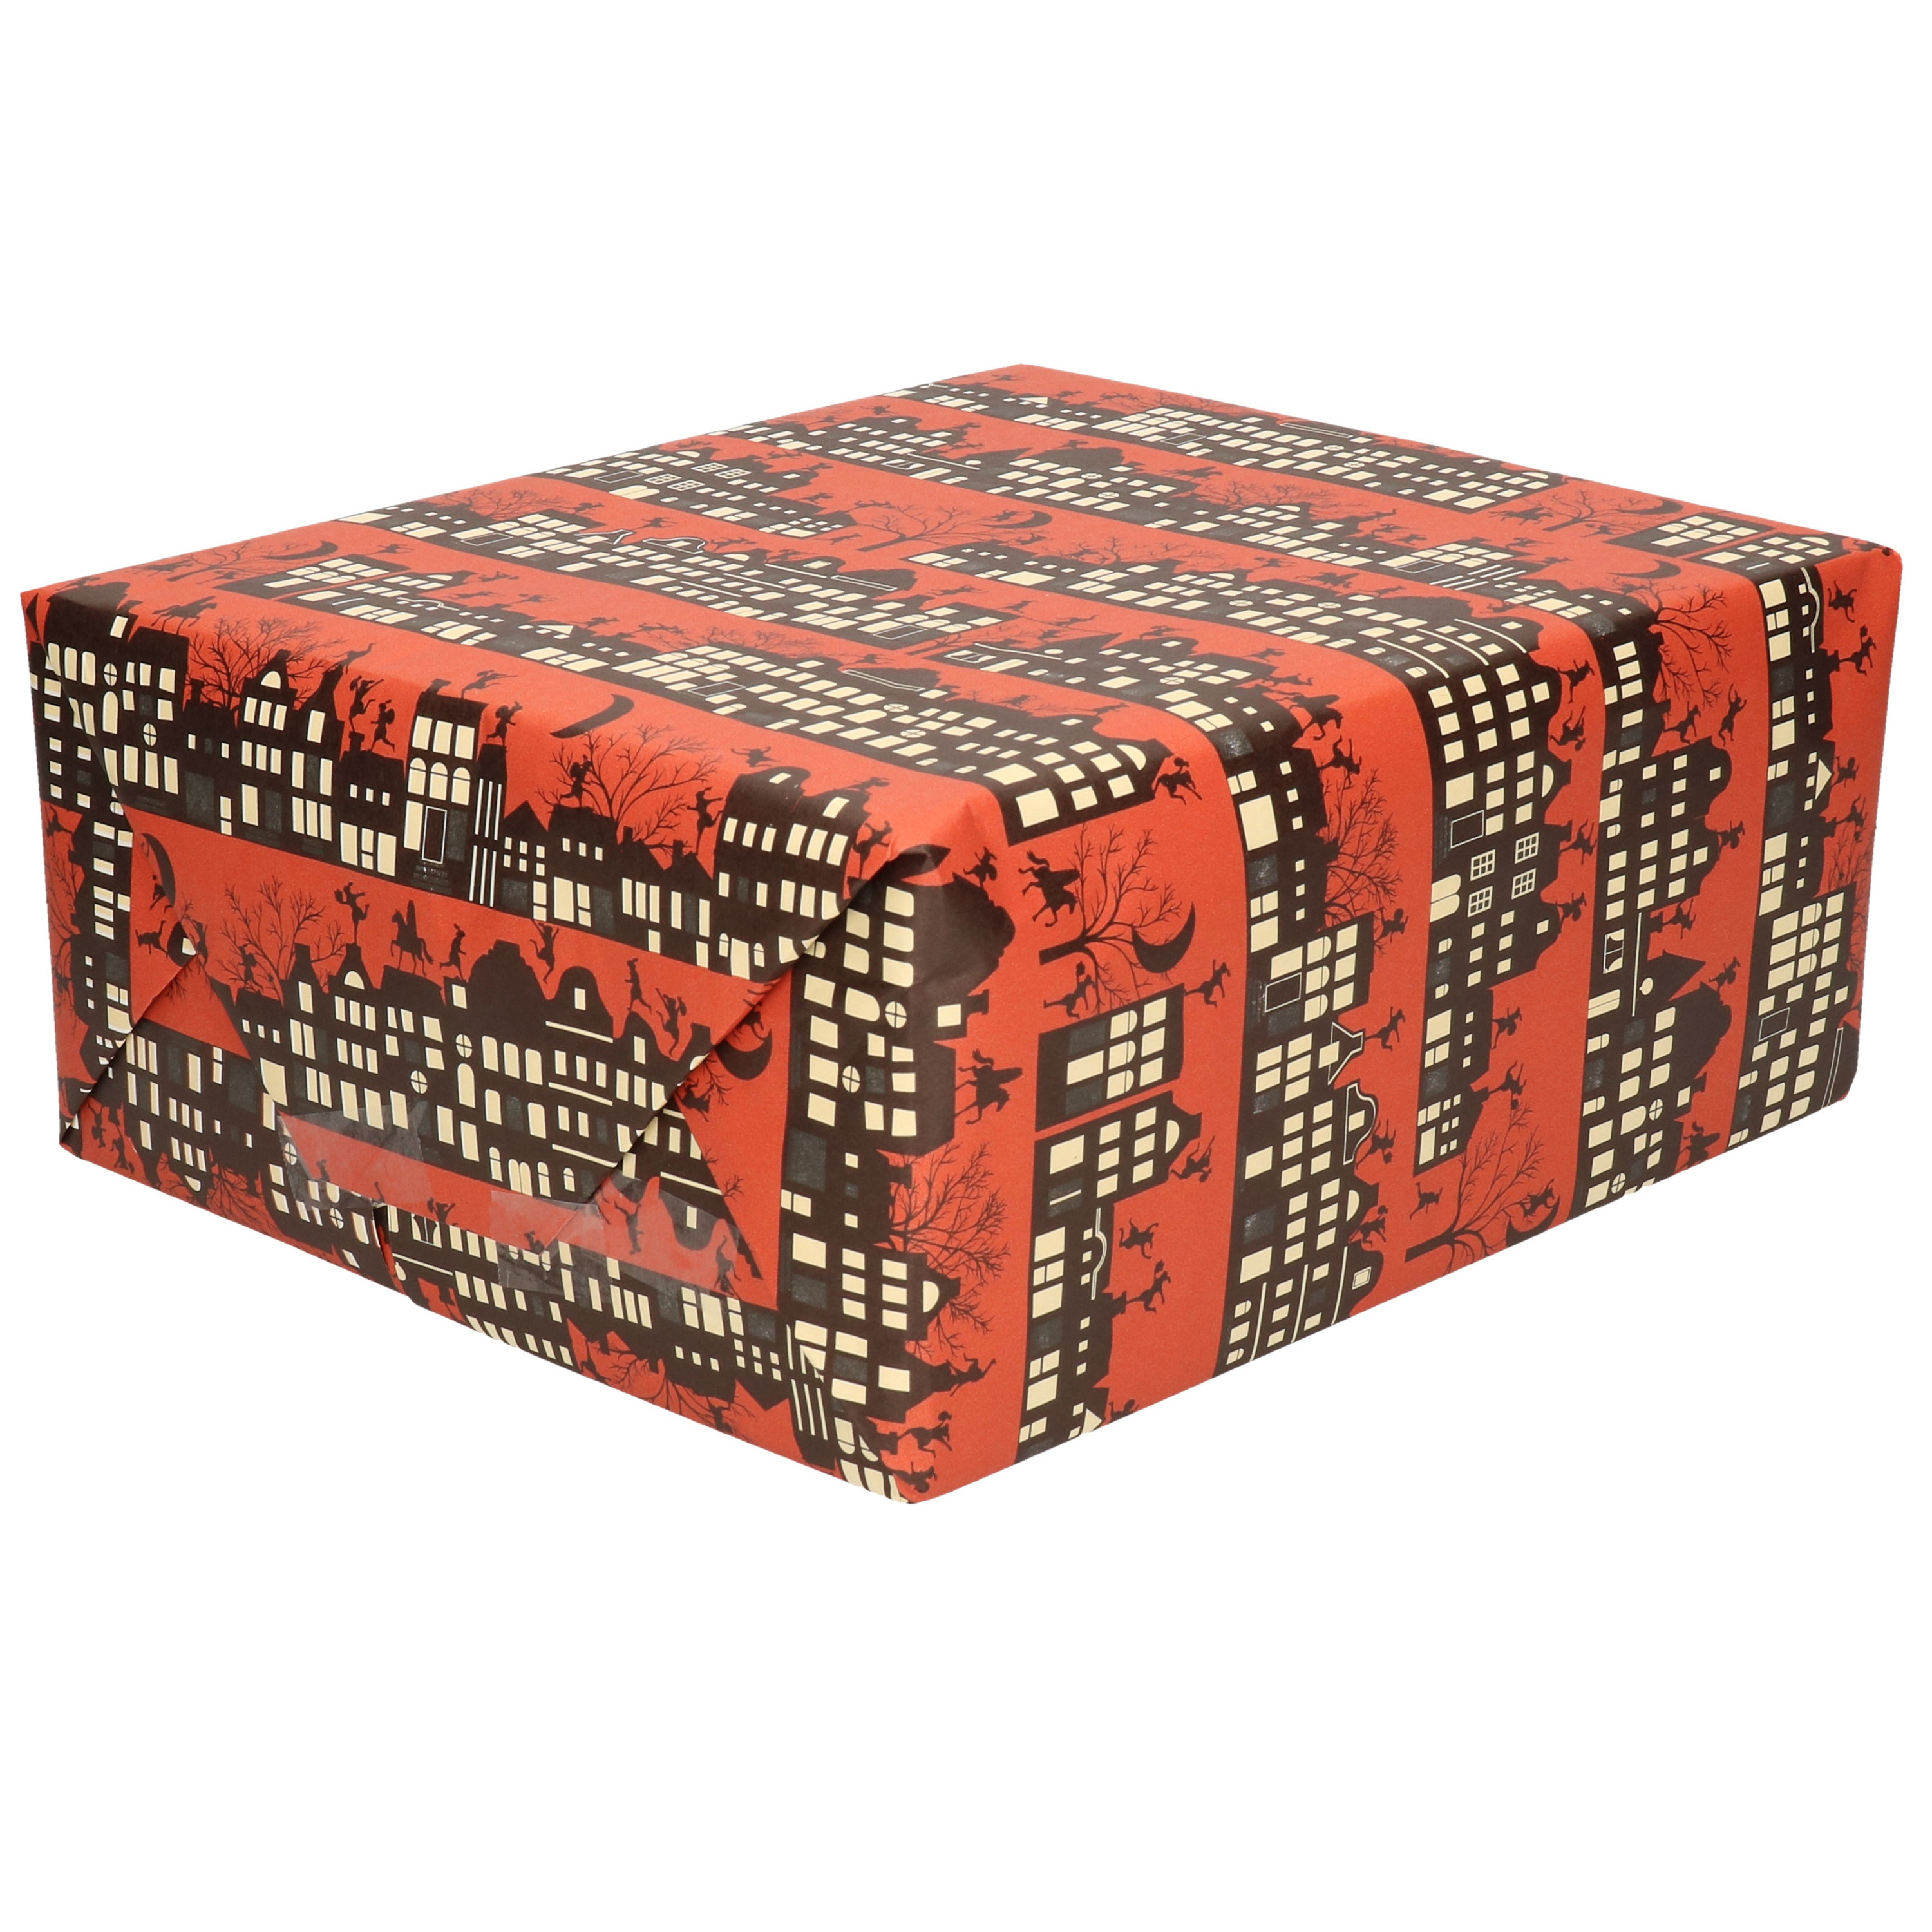 1x Rollen inpakpapier/cadeaupapier Sinterklaas print donkerrood 2,5 x 0,7 meter 70 grams luxe kwalit